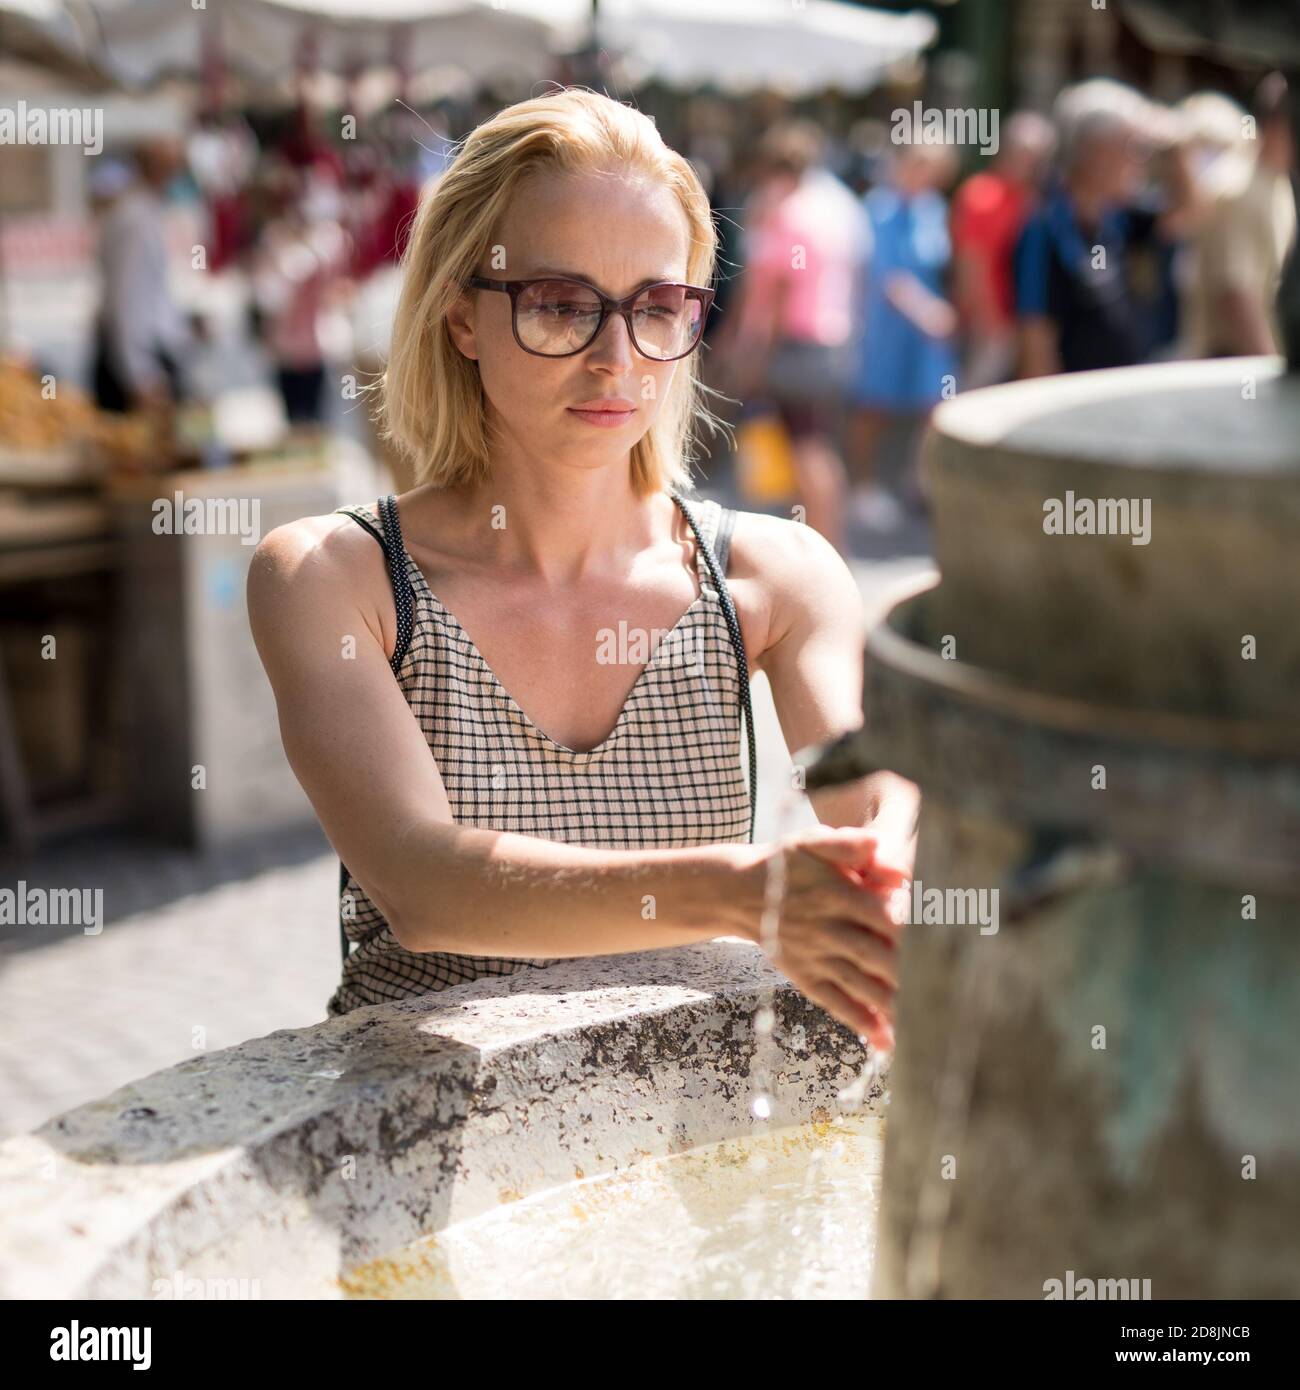 Junge Casual cucasian Frau waschen Hände mit Wasser aus der Öffentlichkeit Stadtbrunnen an einem heißen Sommertag Stockfoto